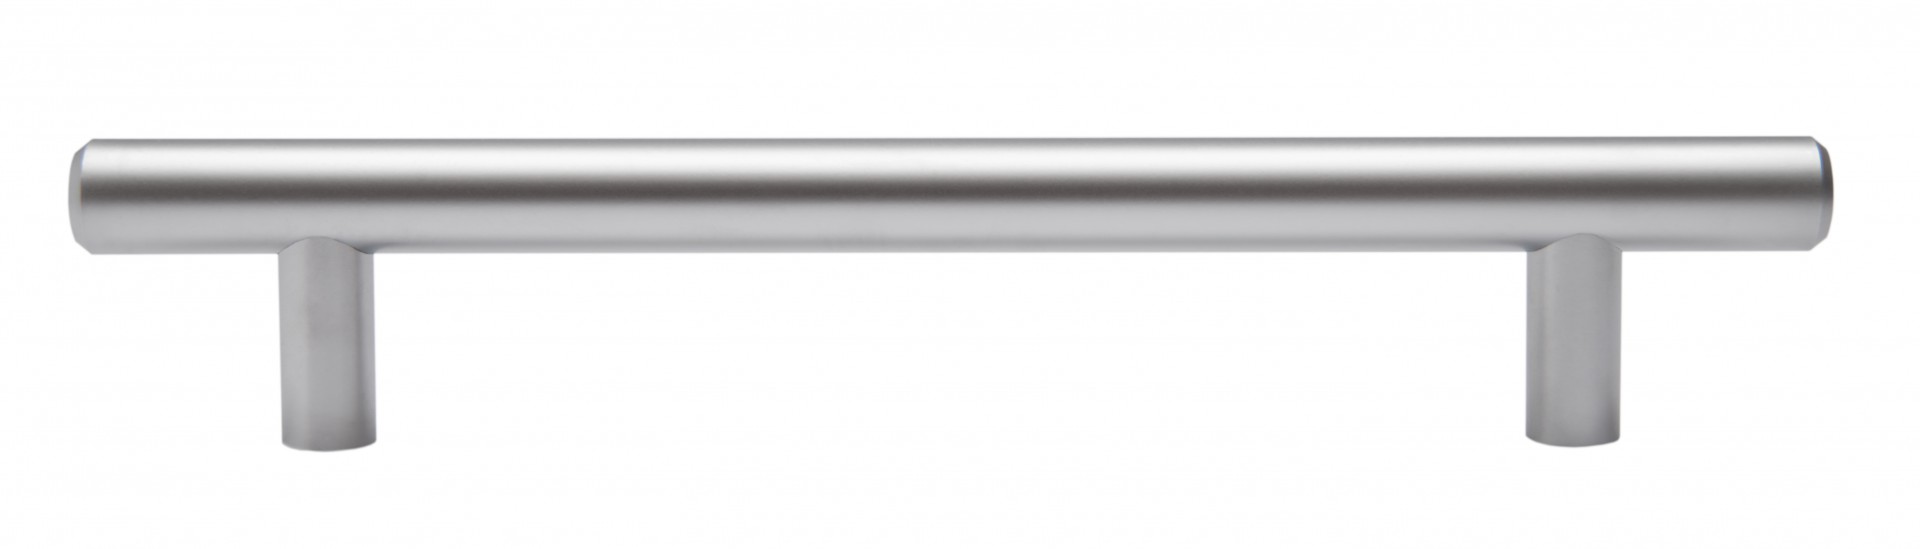 Ручка мебельная рейлинг 320мм сатин RR002SC.5/320 Boyard / 719739-6 / оптом и в розницу / мебельная фурнитура "ЛАВР"